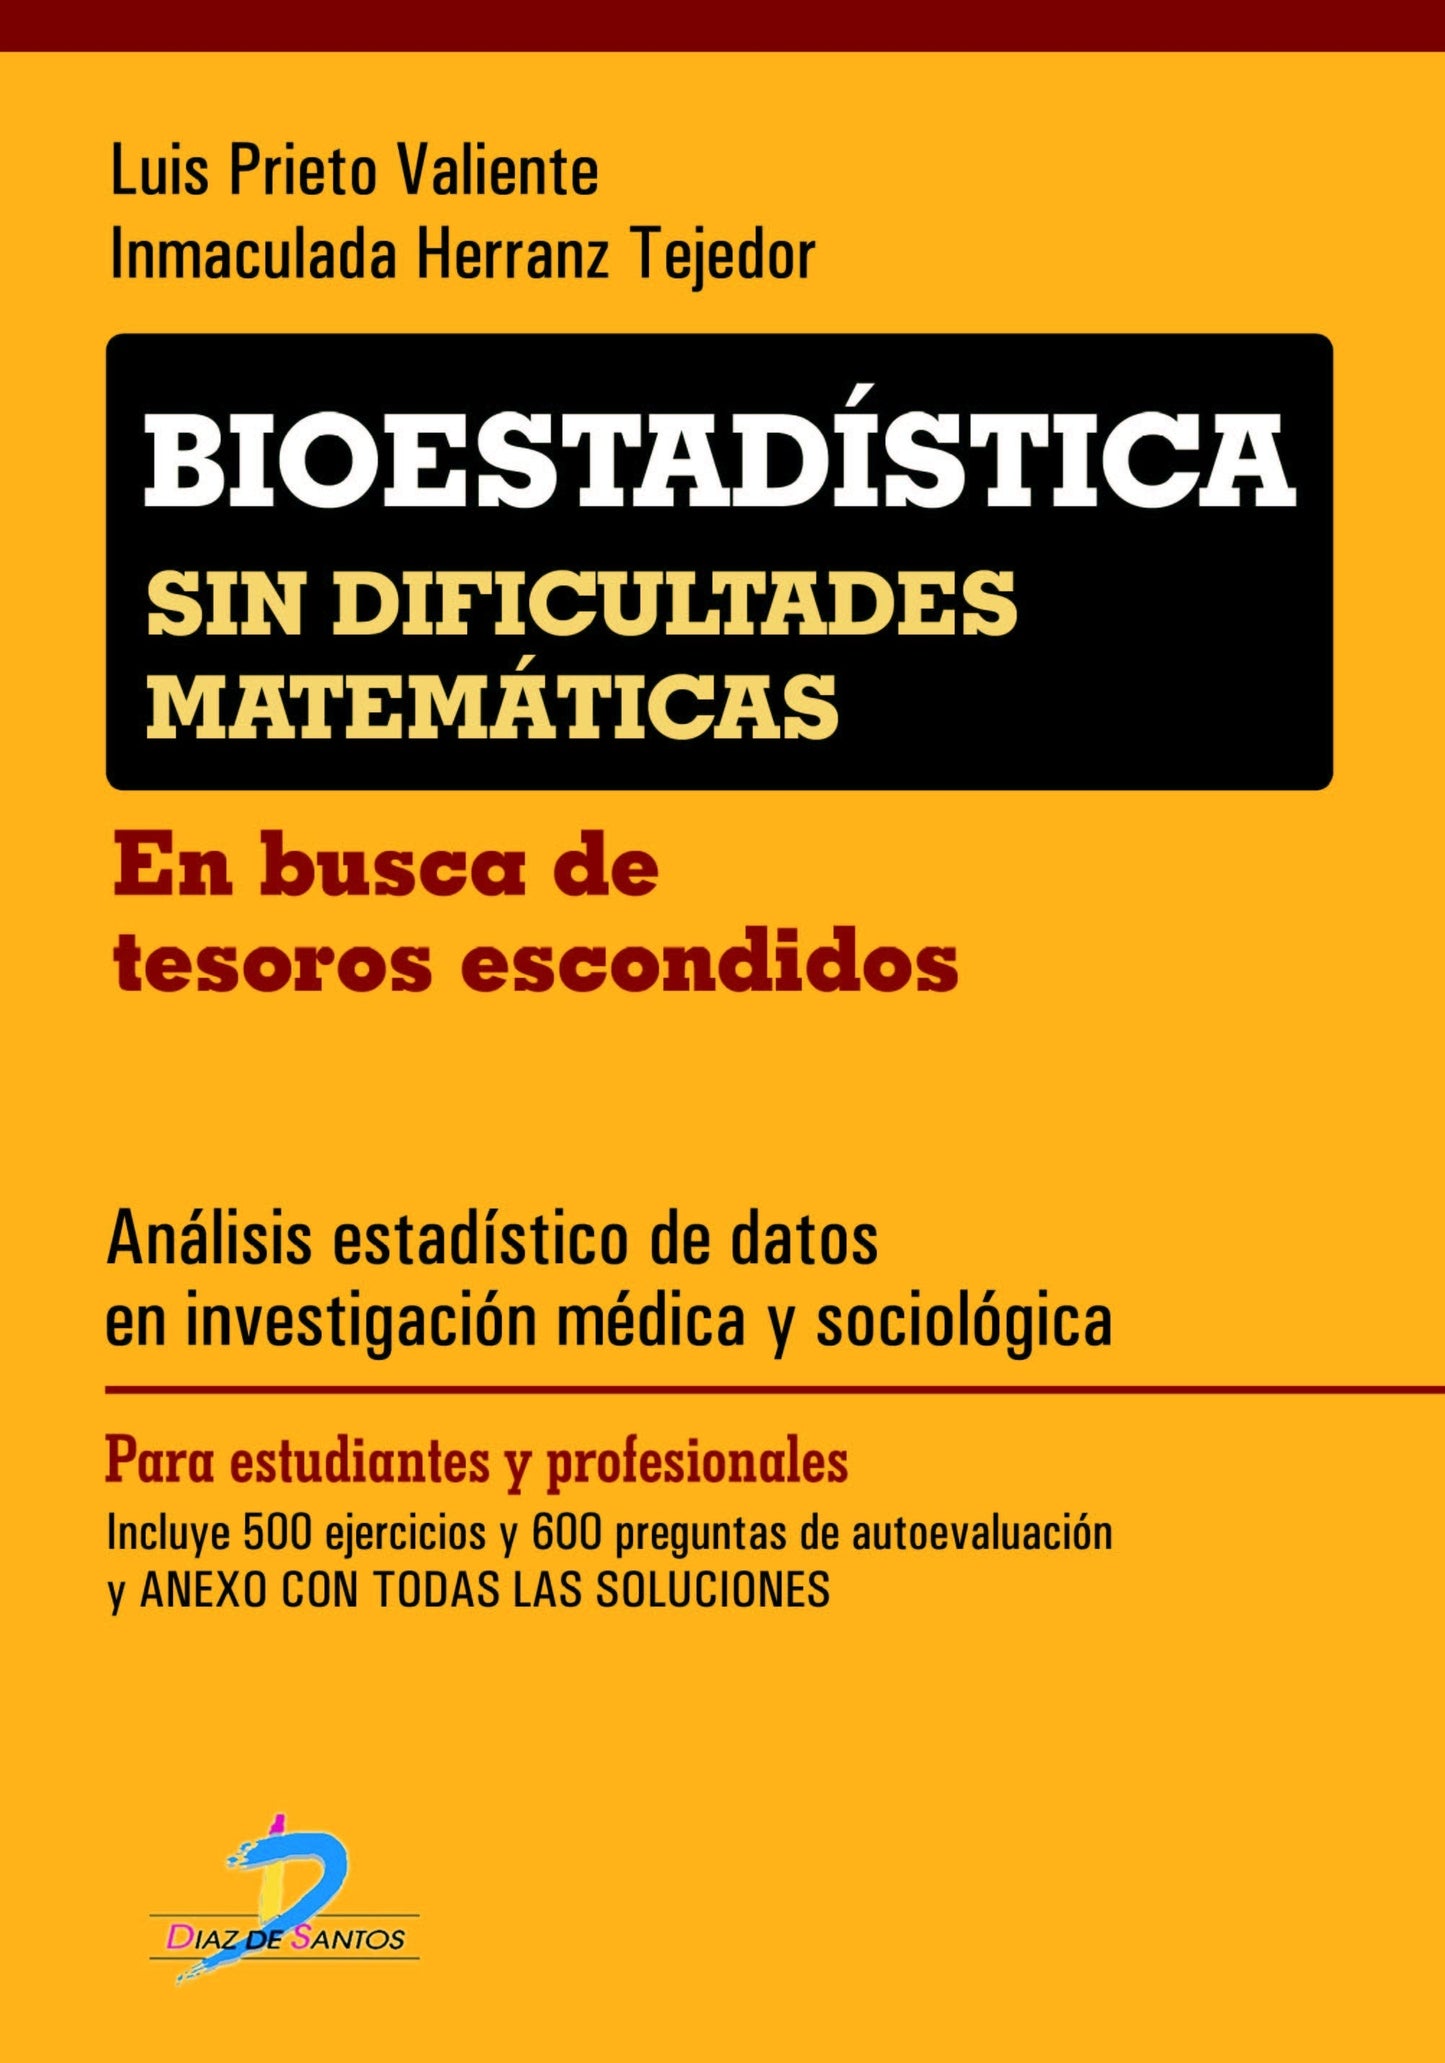 Prieto Valiente . Herranz Tejedor - Bioestadística sin dificultades Matemáticas 8ª Reimpresión 2020 ISBN: 9788479789596 Marban Libros